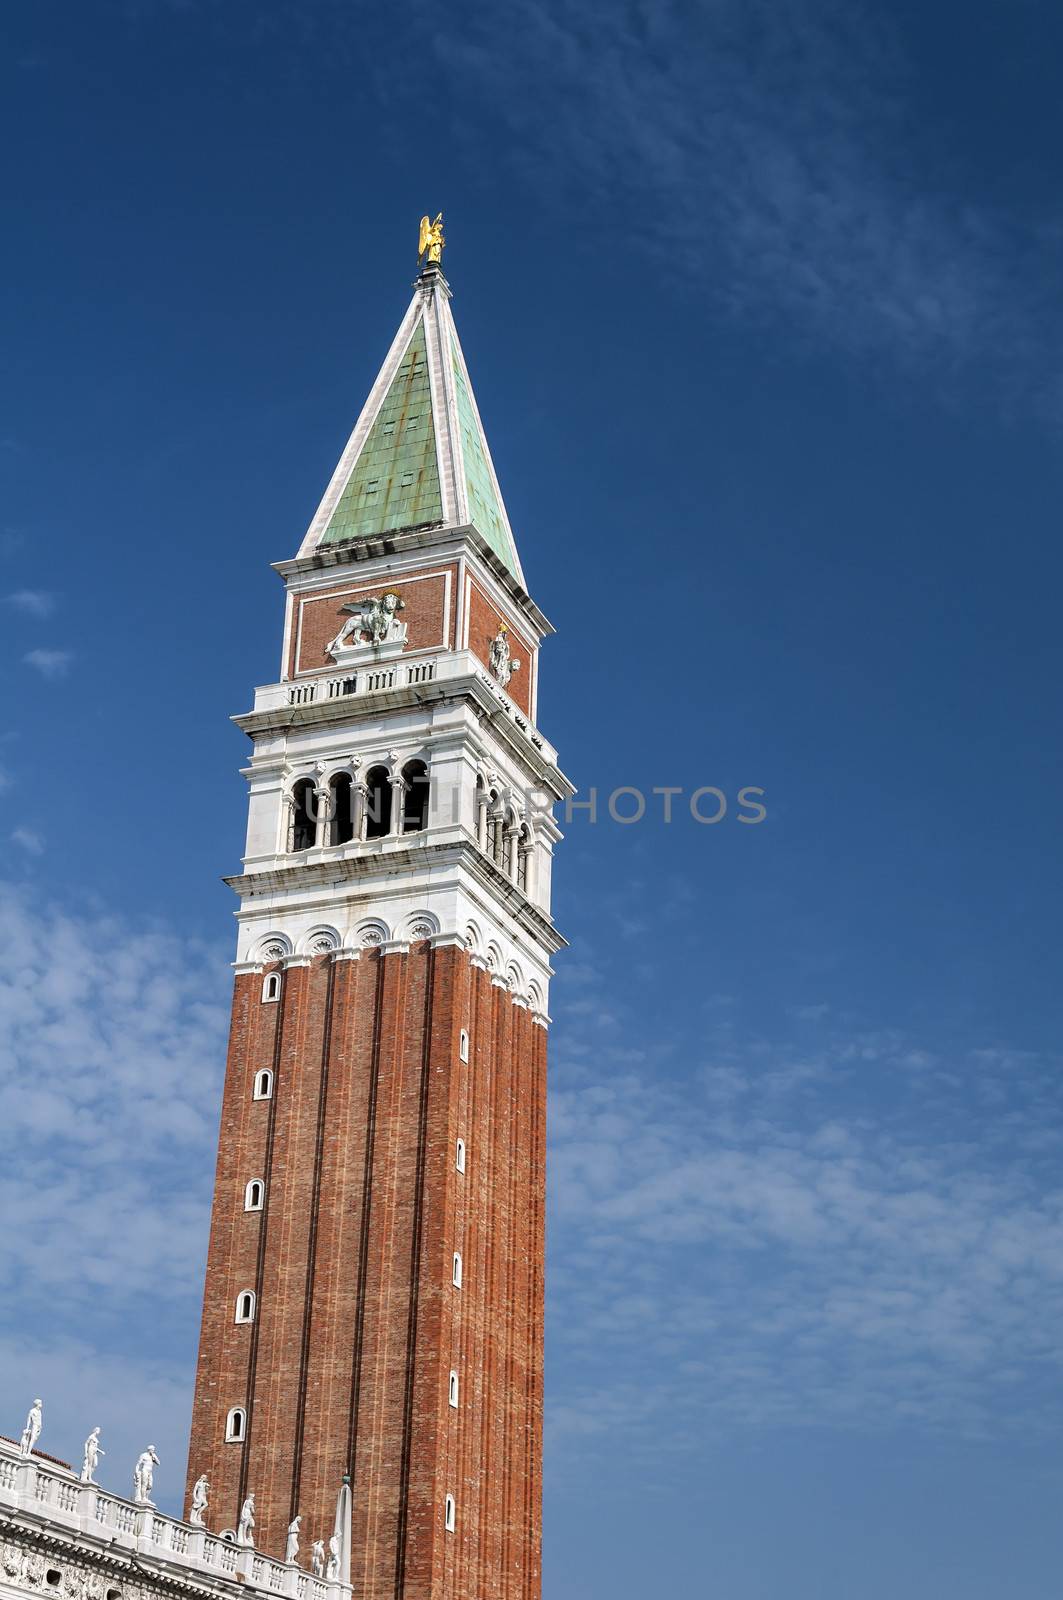 St Mark's Campanile, Campanile di San Marco and Palazzo Ducale, Venice.